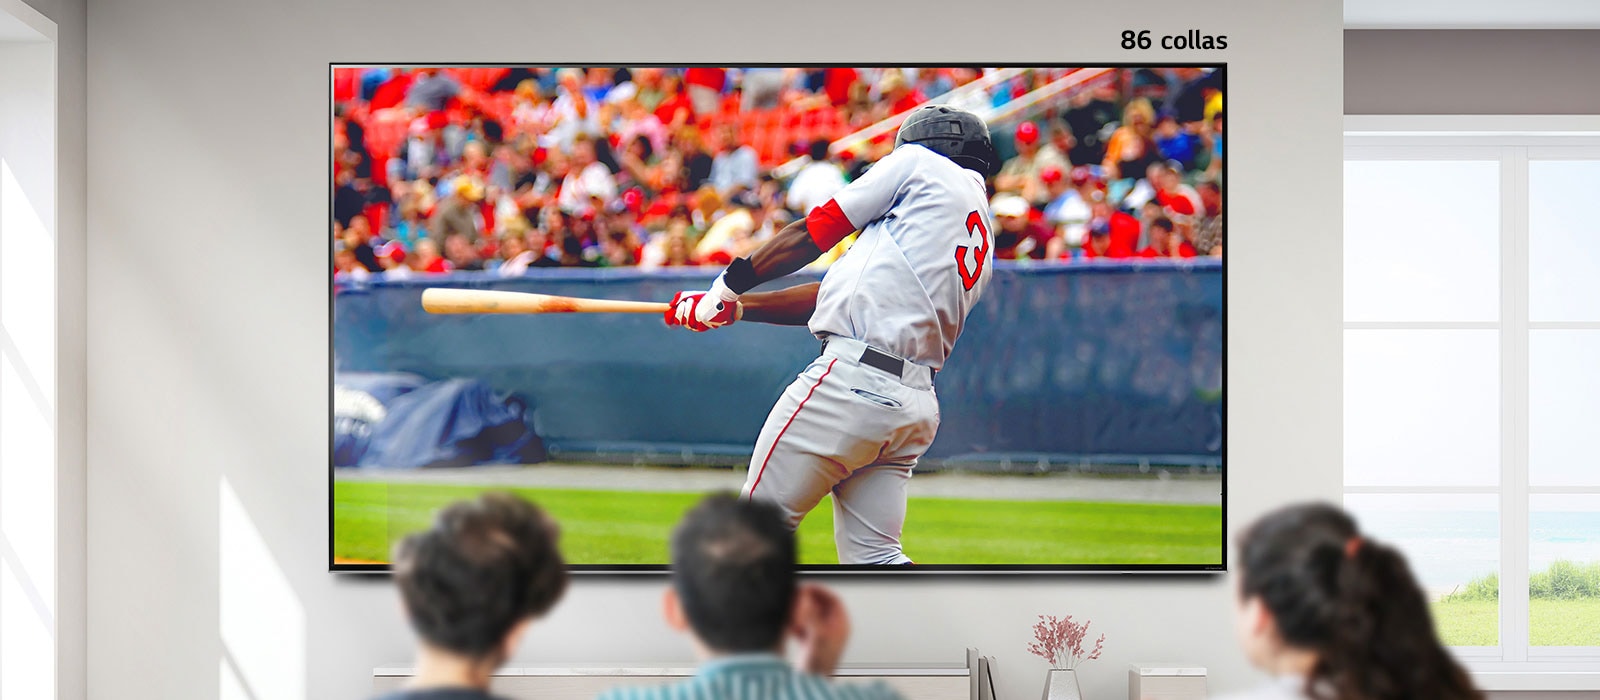 Ritināms attēls, kurā trīs personas skatās beisbola spēli uz liela, pie sienas piestiprināta televizora. Ritinot no kreisās uz labo pusi, ekrāns kļūst lielāks.